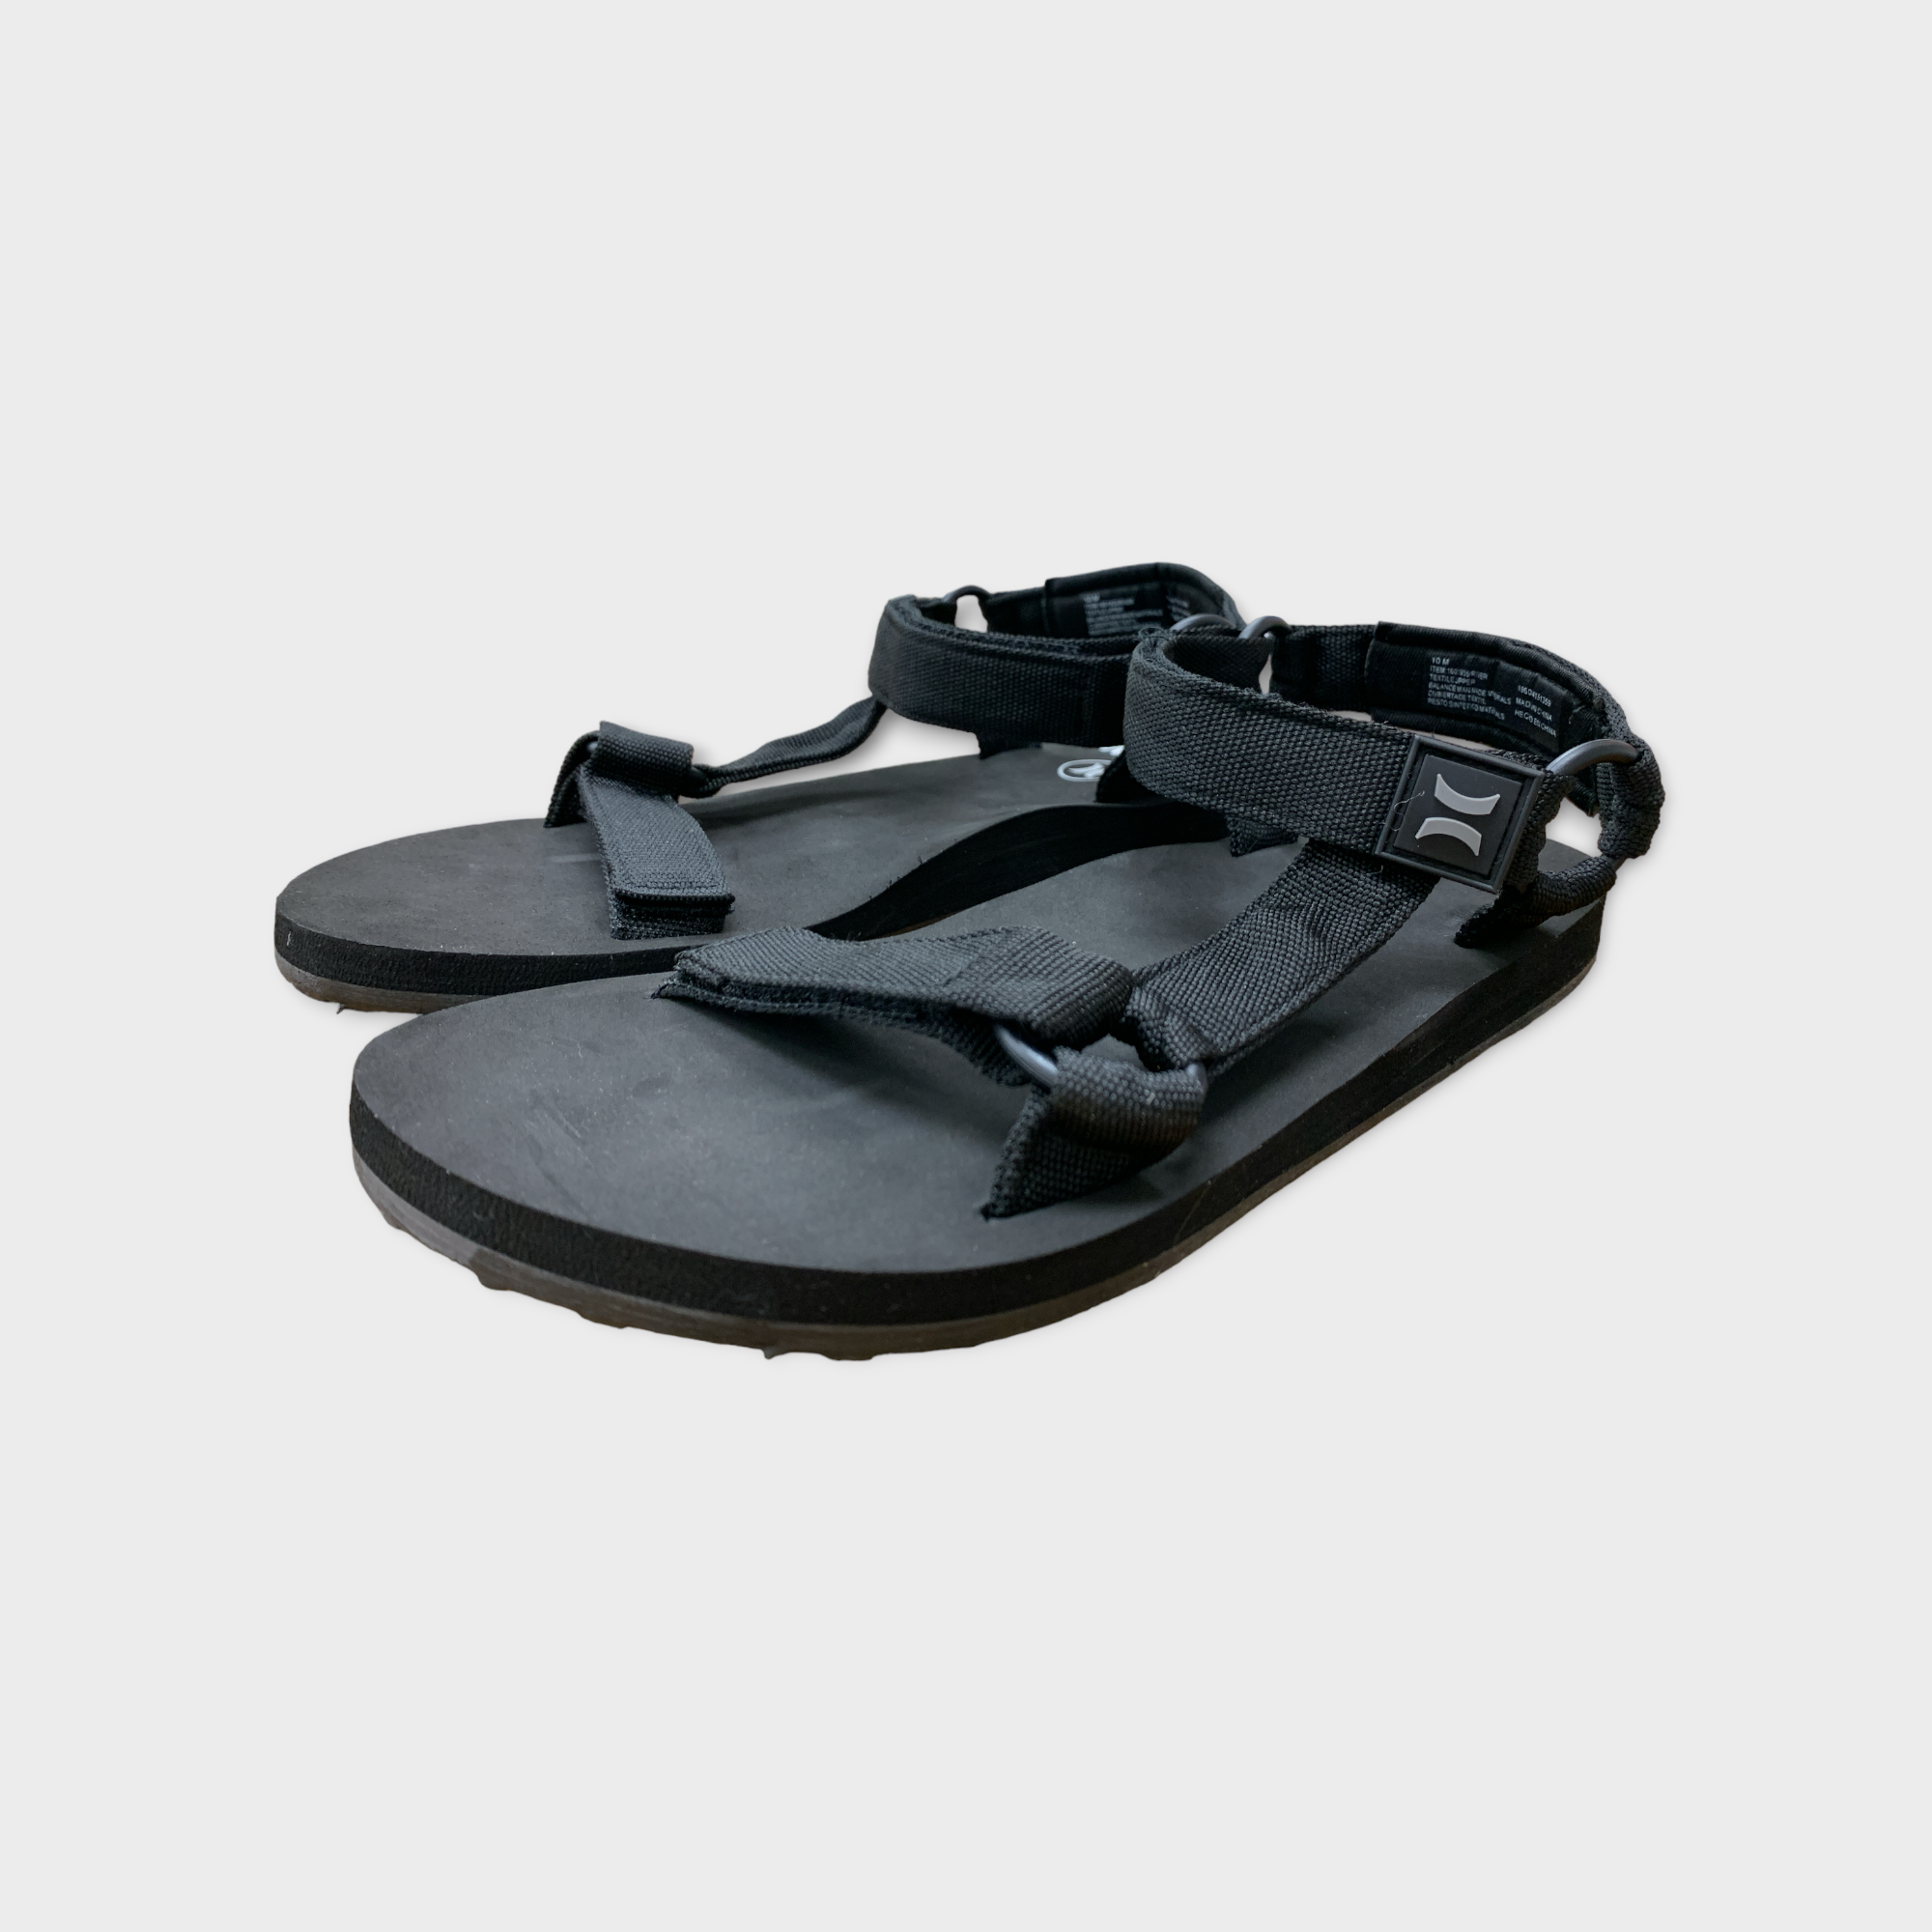 Crocs Flip Flop Sandals Men's Size 10/Women's 12 | Size 10 women, Crocs flip  flops, Mens sandals